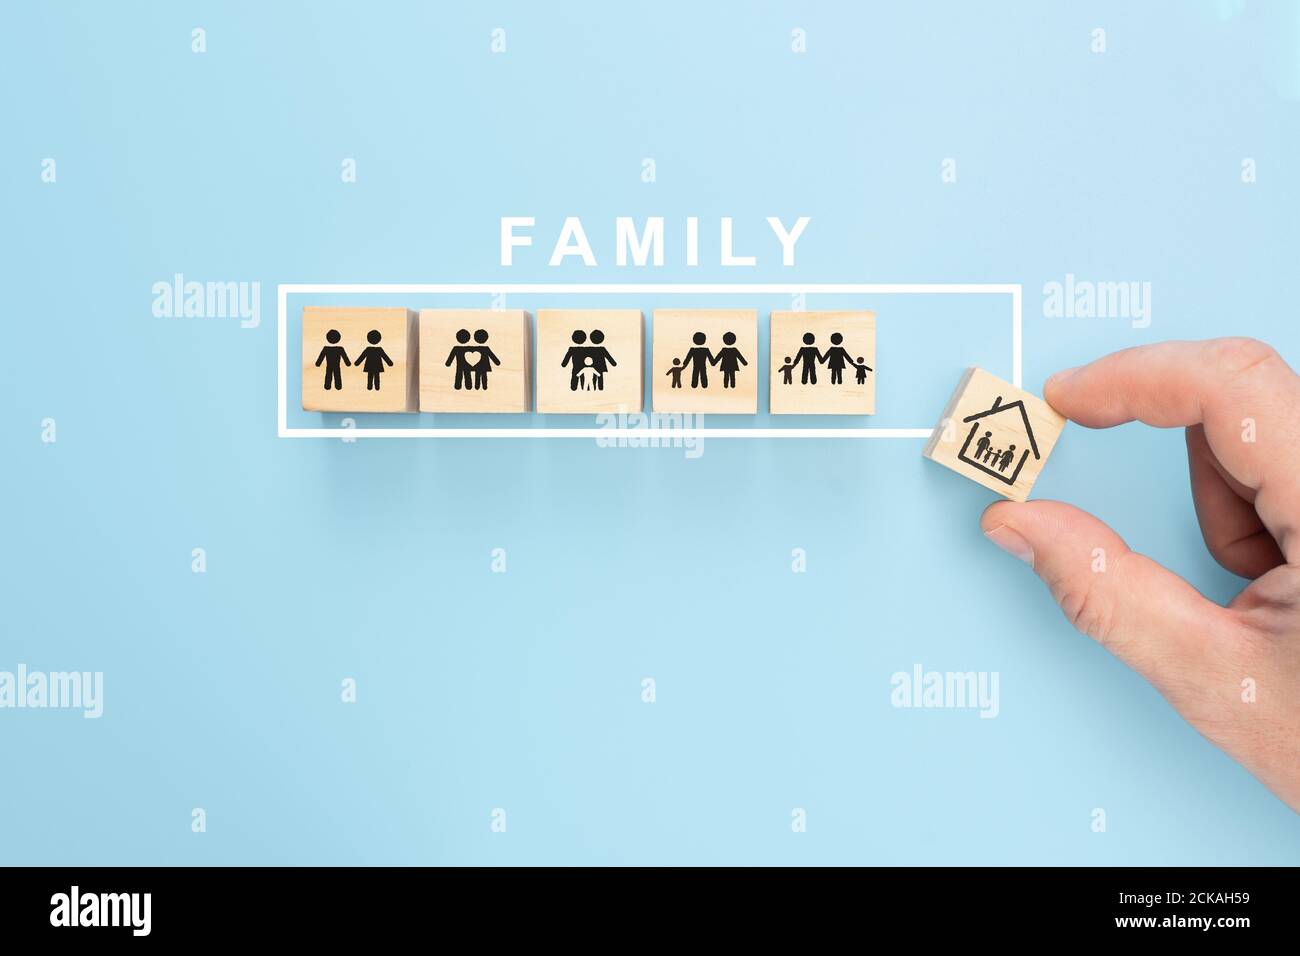 Hand anordnend Holzwürfel mit Familiensymbol auf pastellblauem Hintergrund, Kopierraum. Handgriff Holzblock mit Icon Family Konzept Stockfoto